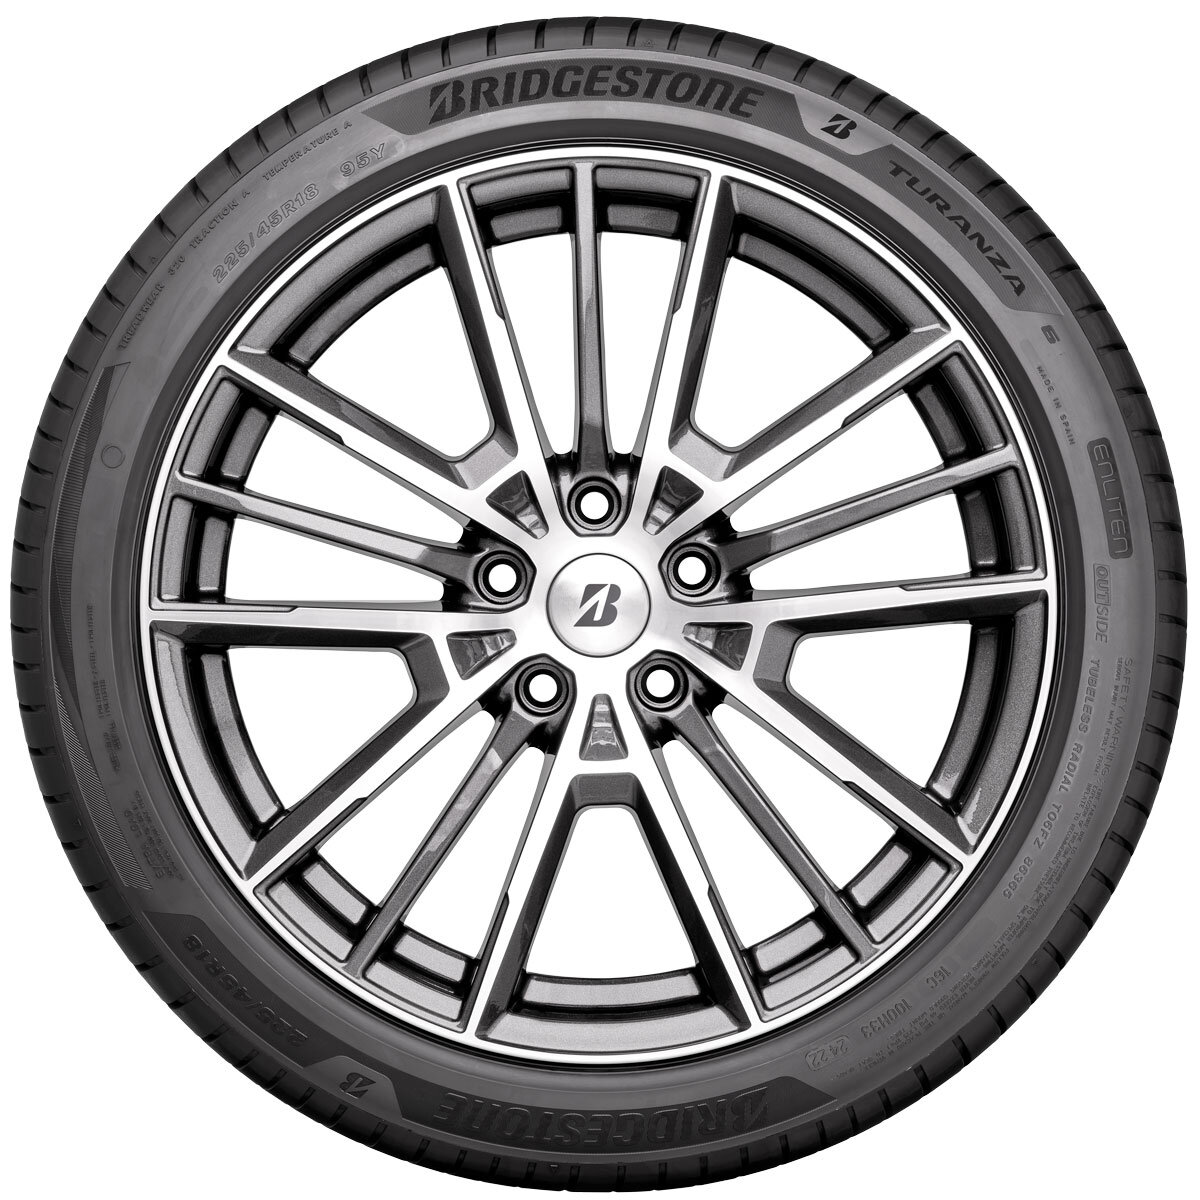 Bridgestone 215/55 R16 W (97) TURANZA TUR6 XL